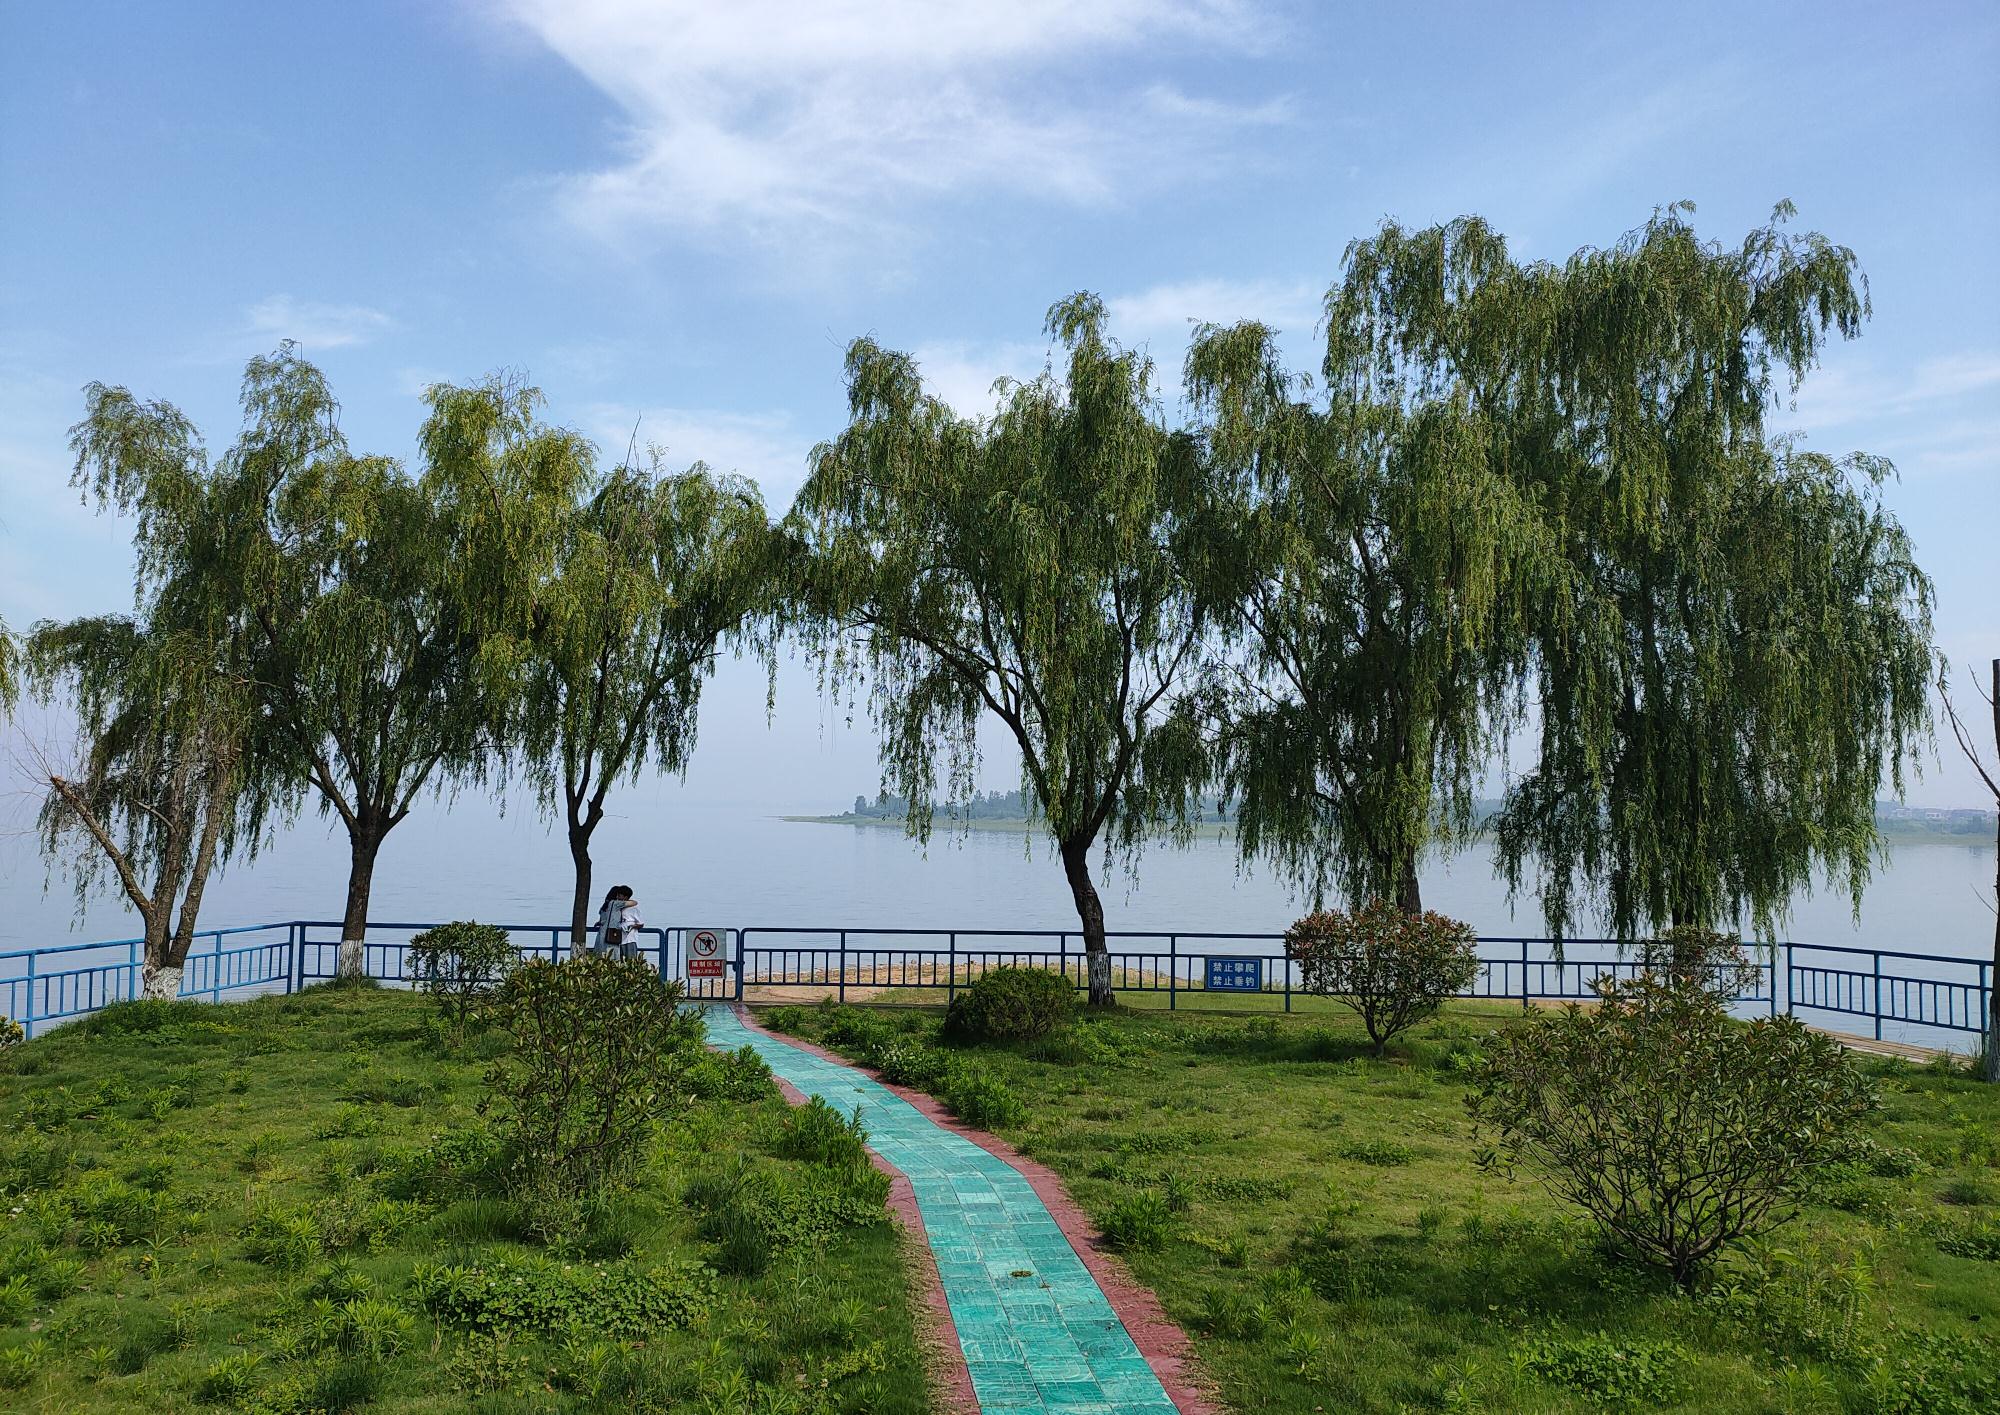 塔山水库,国家级水利风景区,蓝天白云,青山绿树映水中